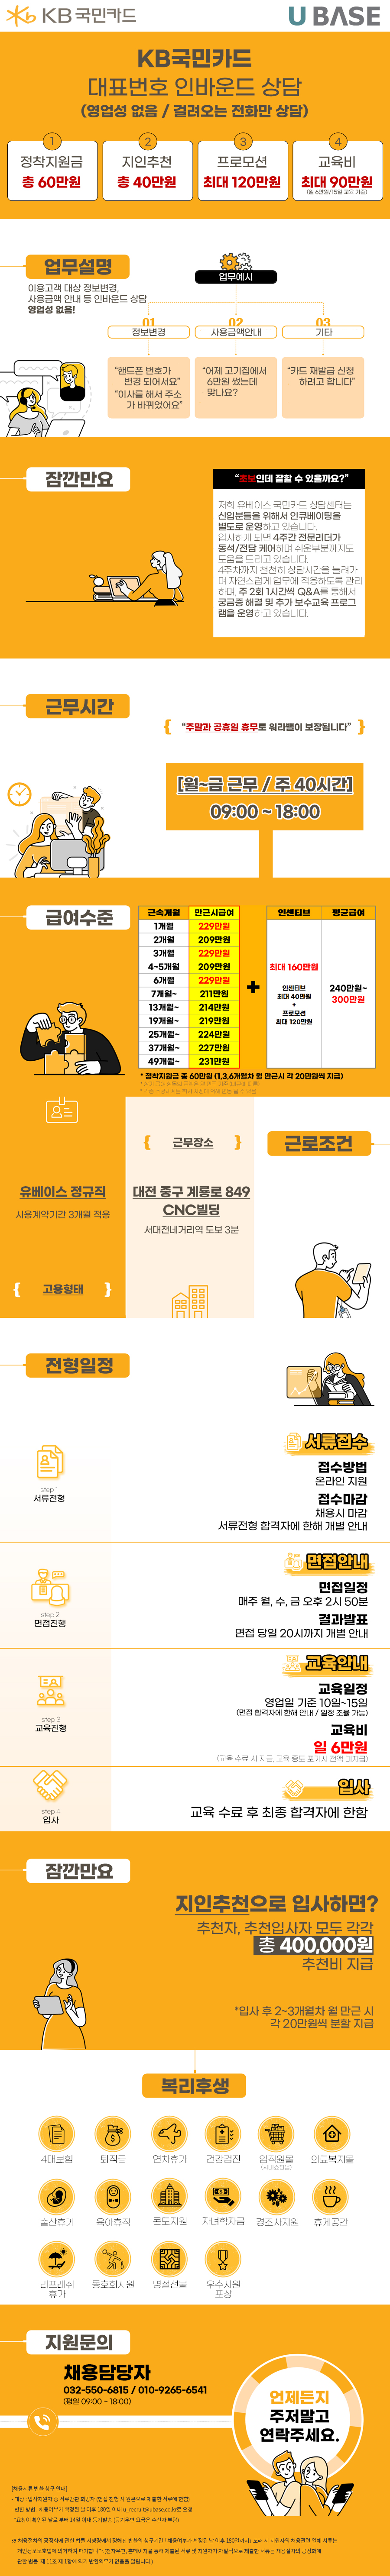 [KB국민카드] 대전/대표번호 순수 인바운드 상담